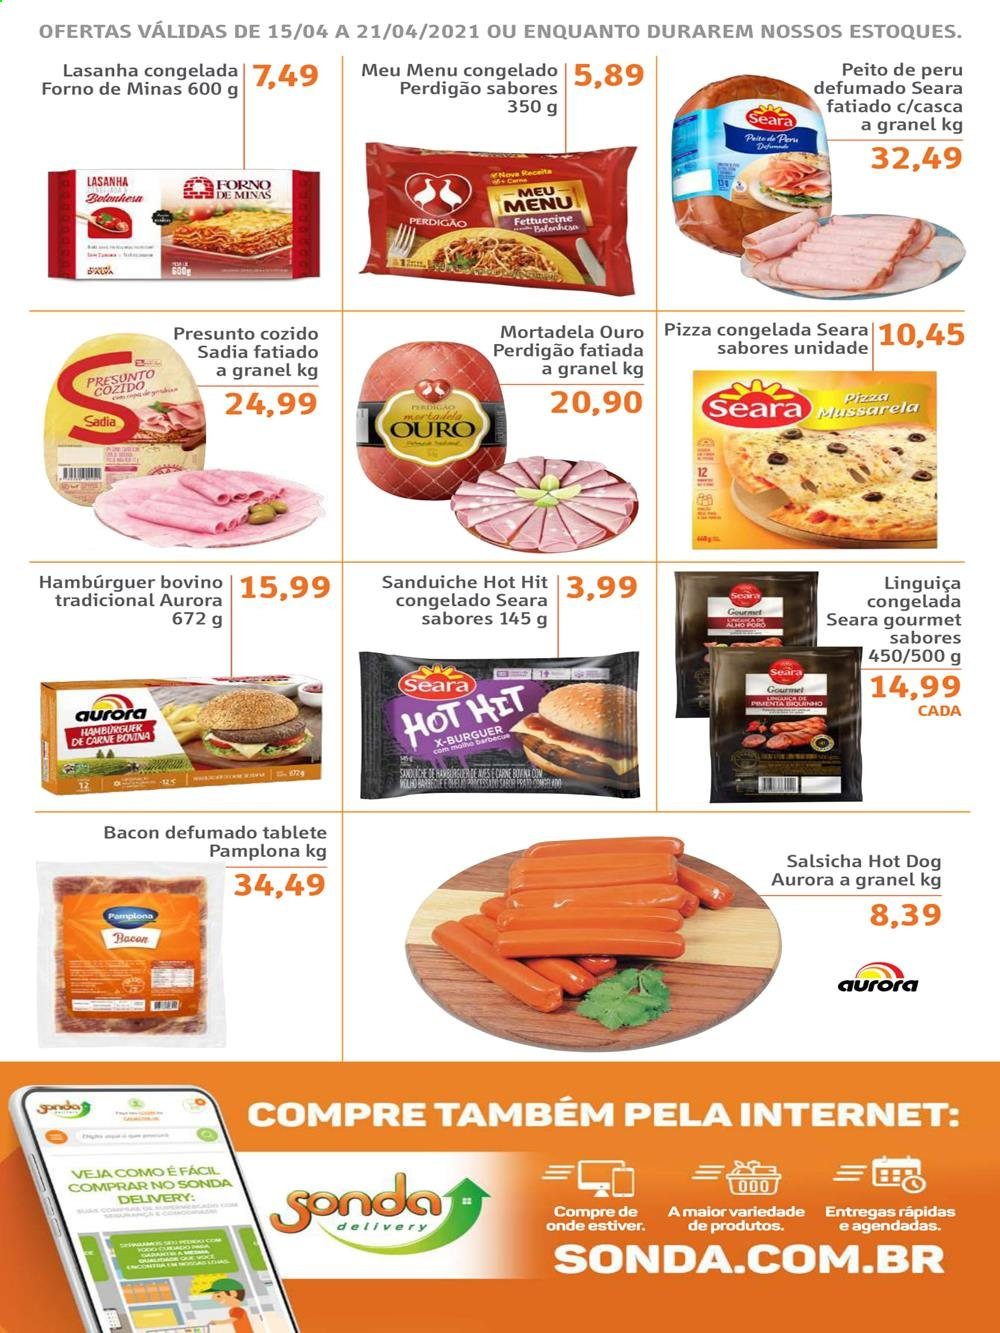 thumbnail - Folheto Sonda Supermercados - 15/04/2021 - 21/04/2021 - Produtos em promoção - sanduiche, peito de peru, perú, Perdigão, carne bovina, hamburger, pizza, lasanha, presunto, mortadela, linguiça, salsicha, Aurora. Página 2.